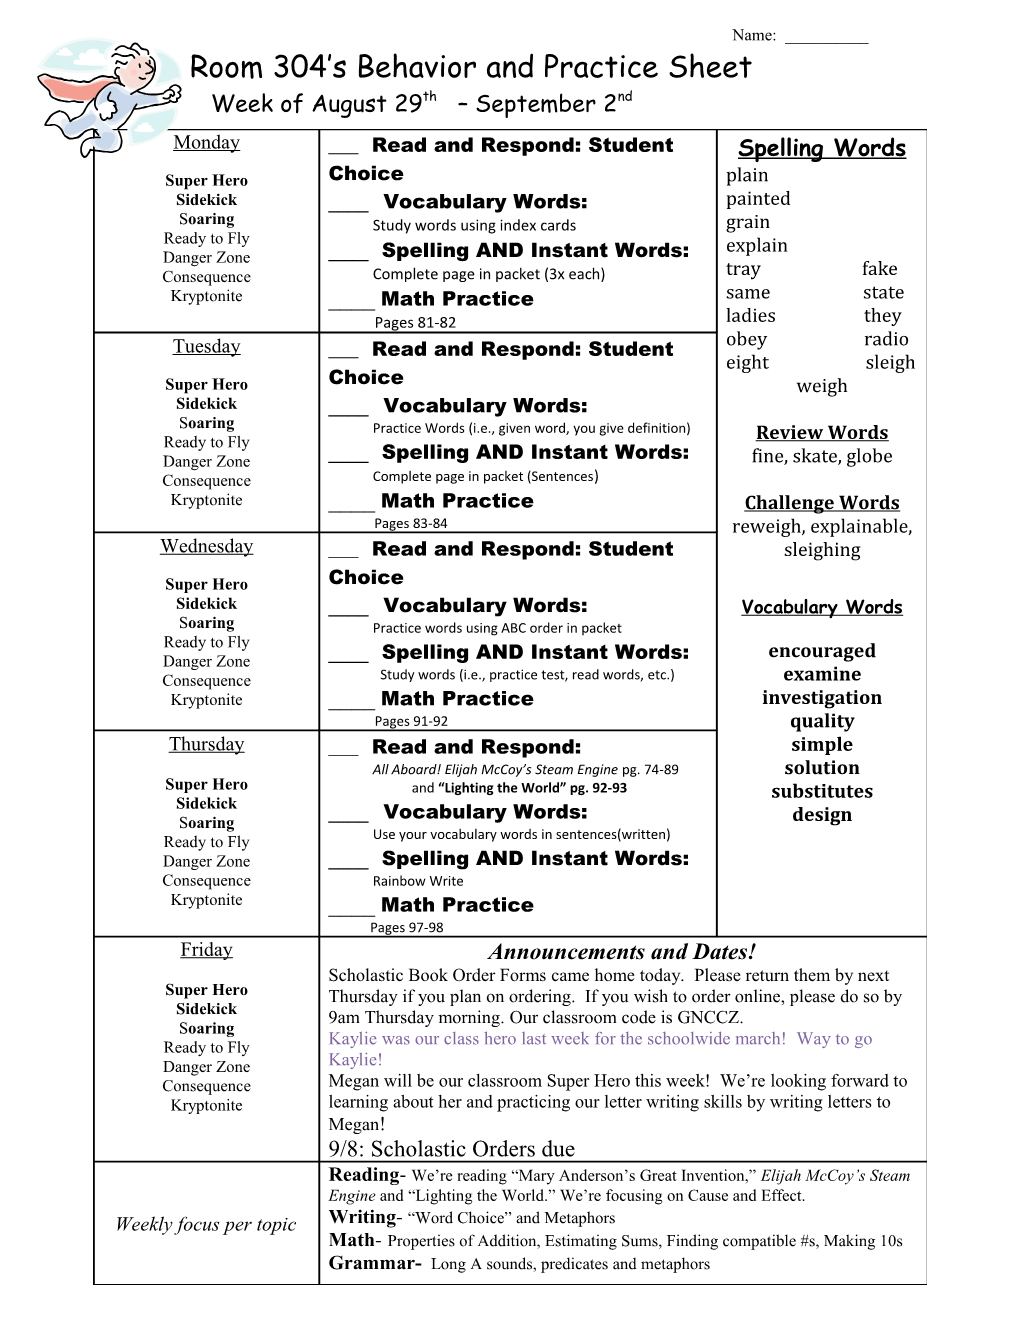 Room 304 S Behavior and Practice Sheet s3